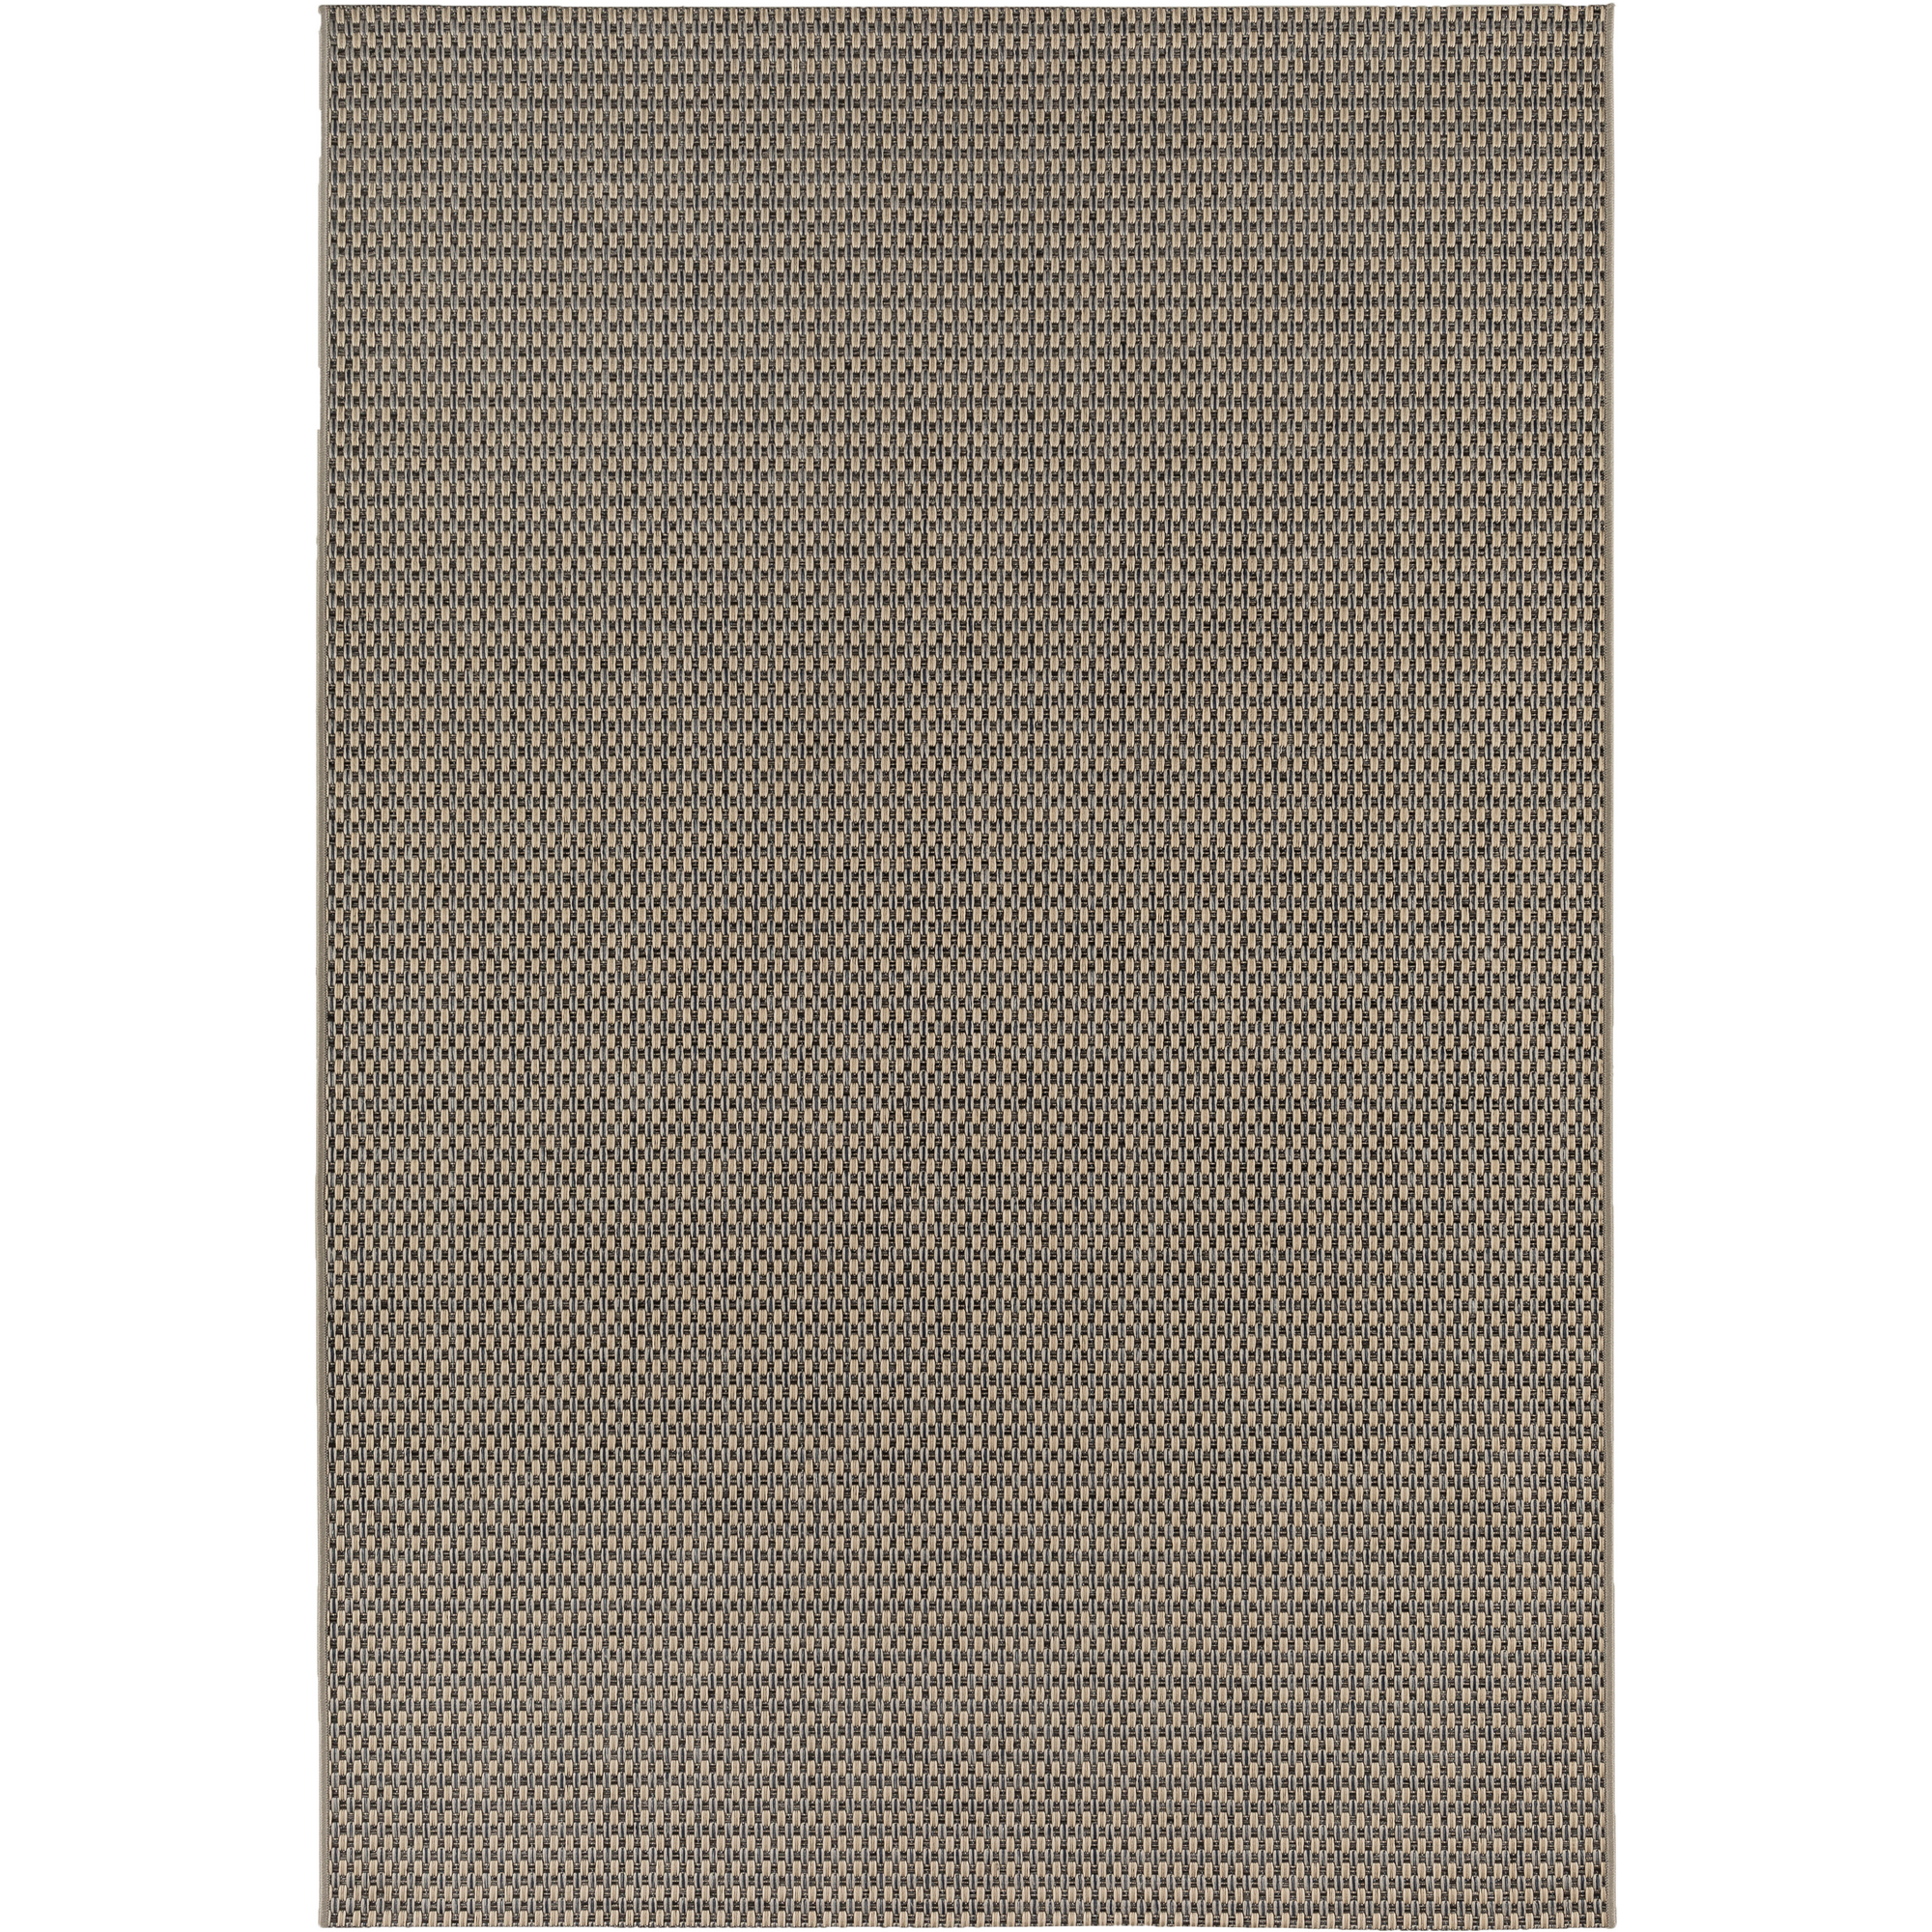 Teppich 'Claudio' beige/grau 160 x 230 cm + product picture